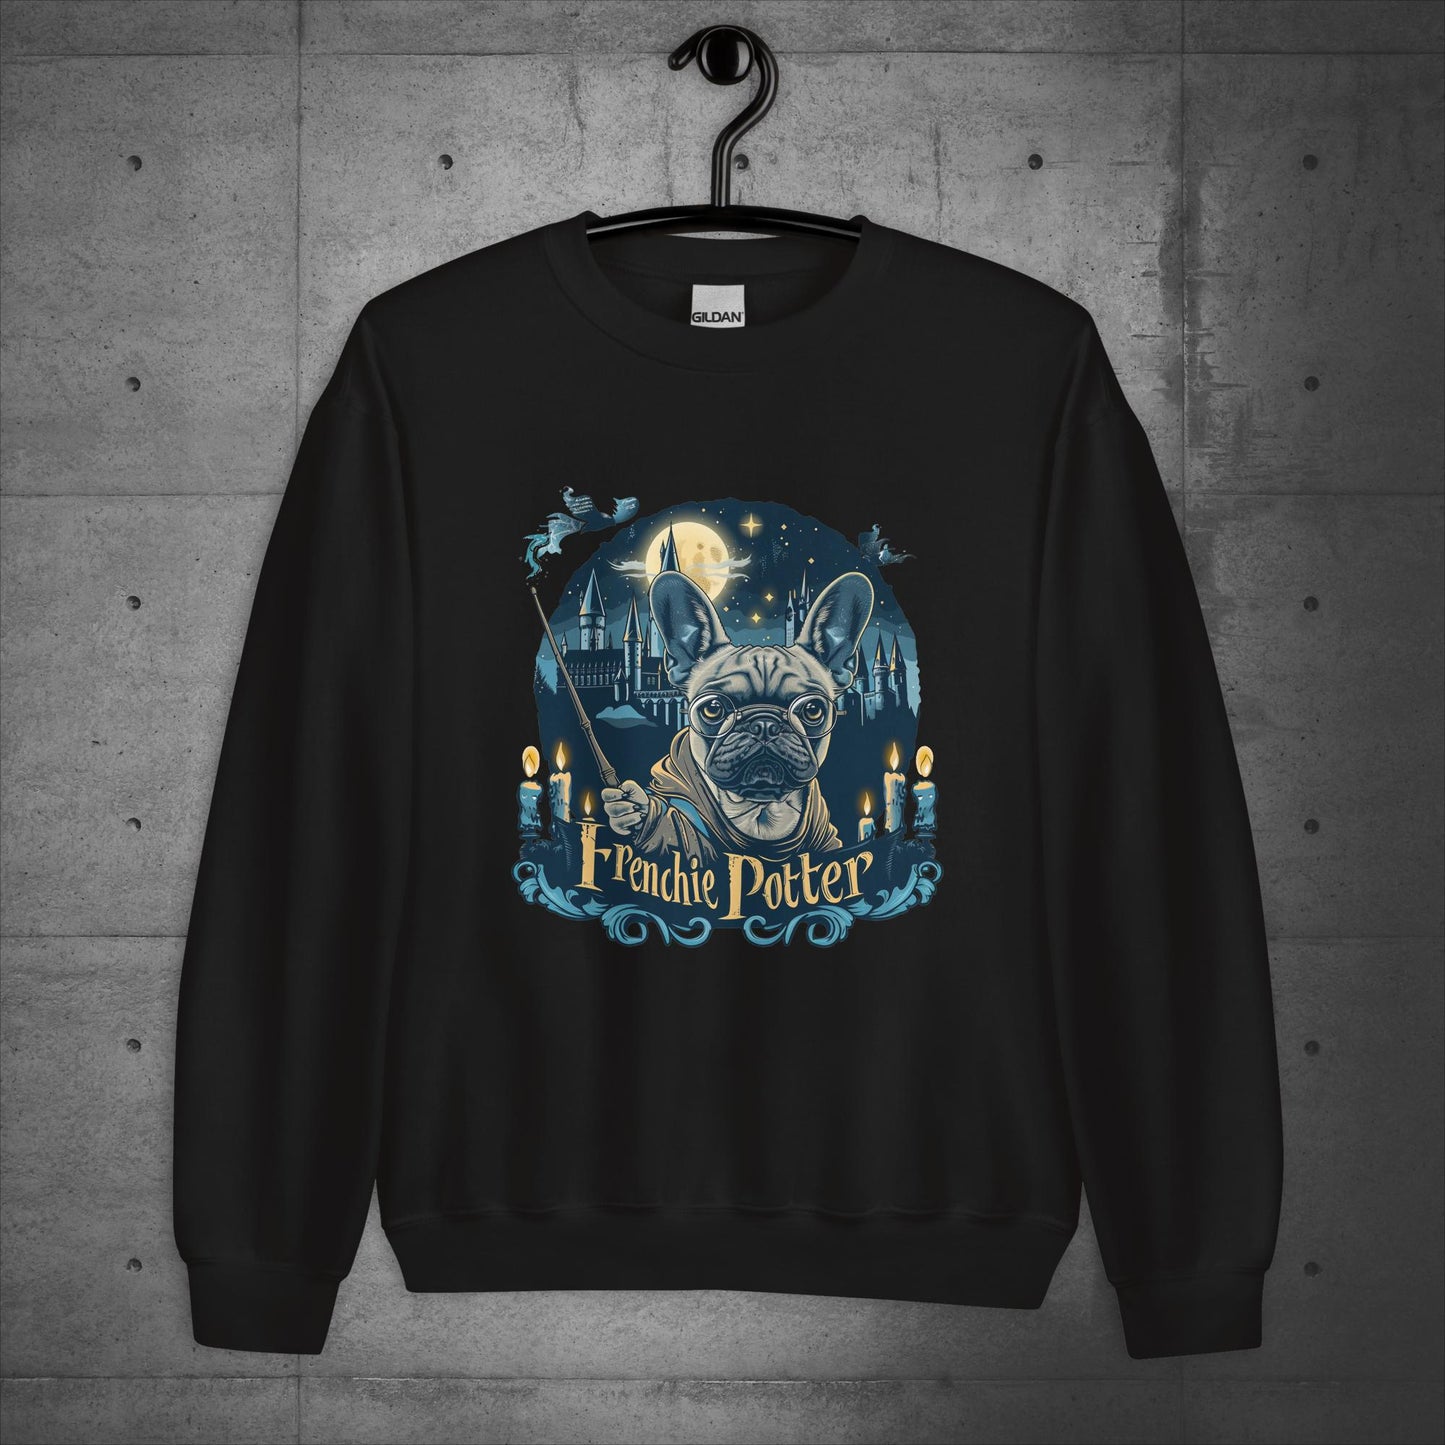 Unisex "Frenchie Potter" Sweater/Sweatshirt